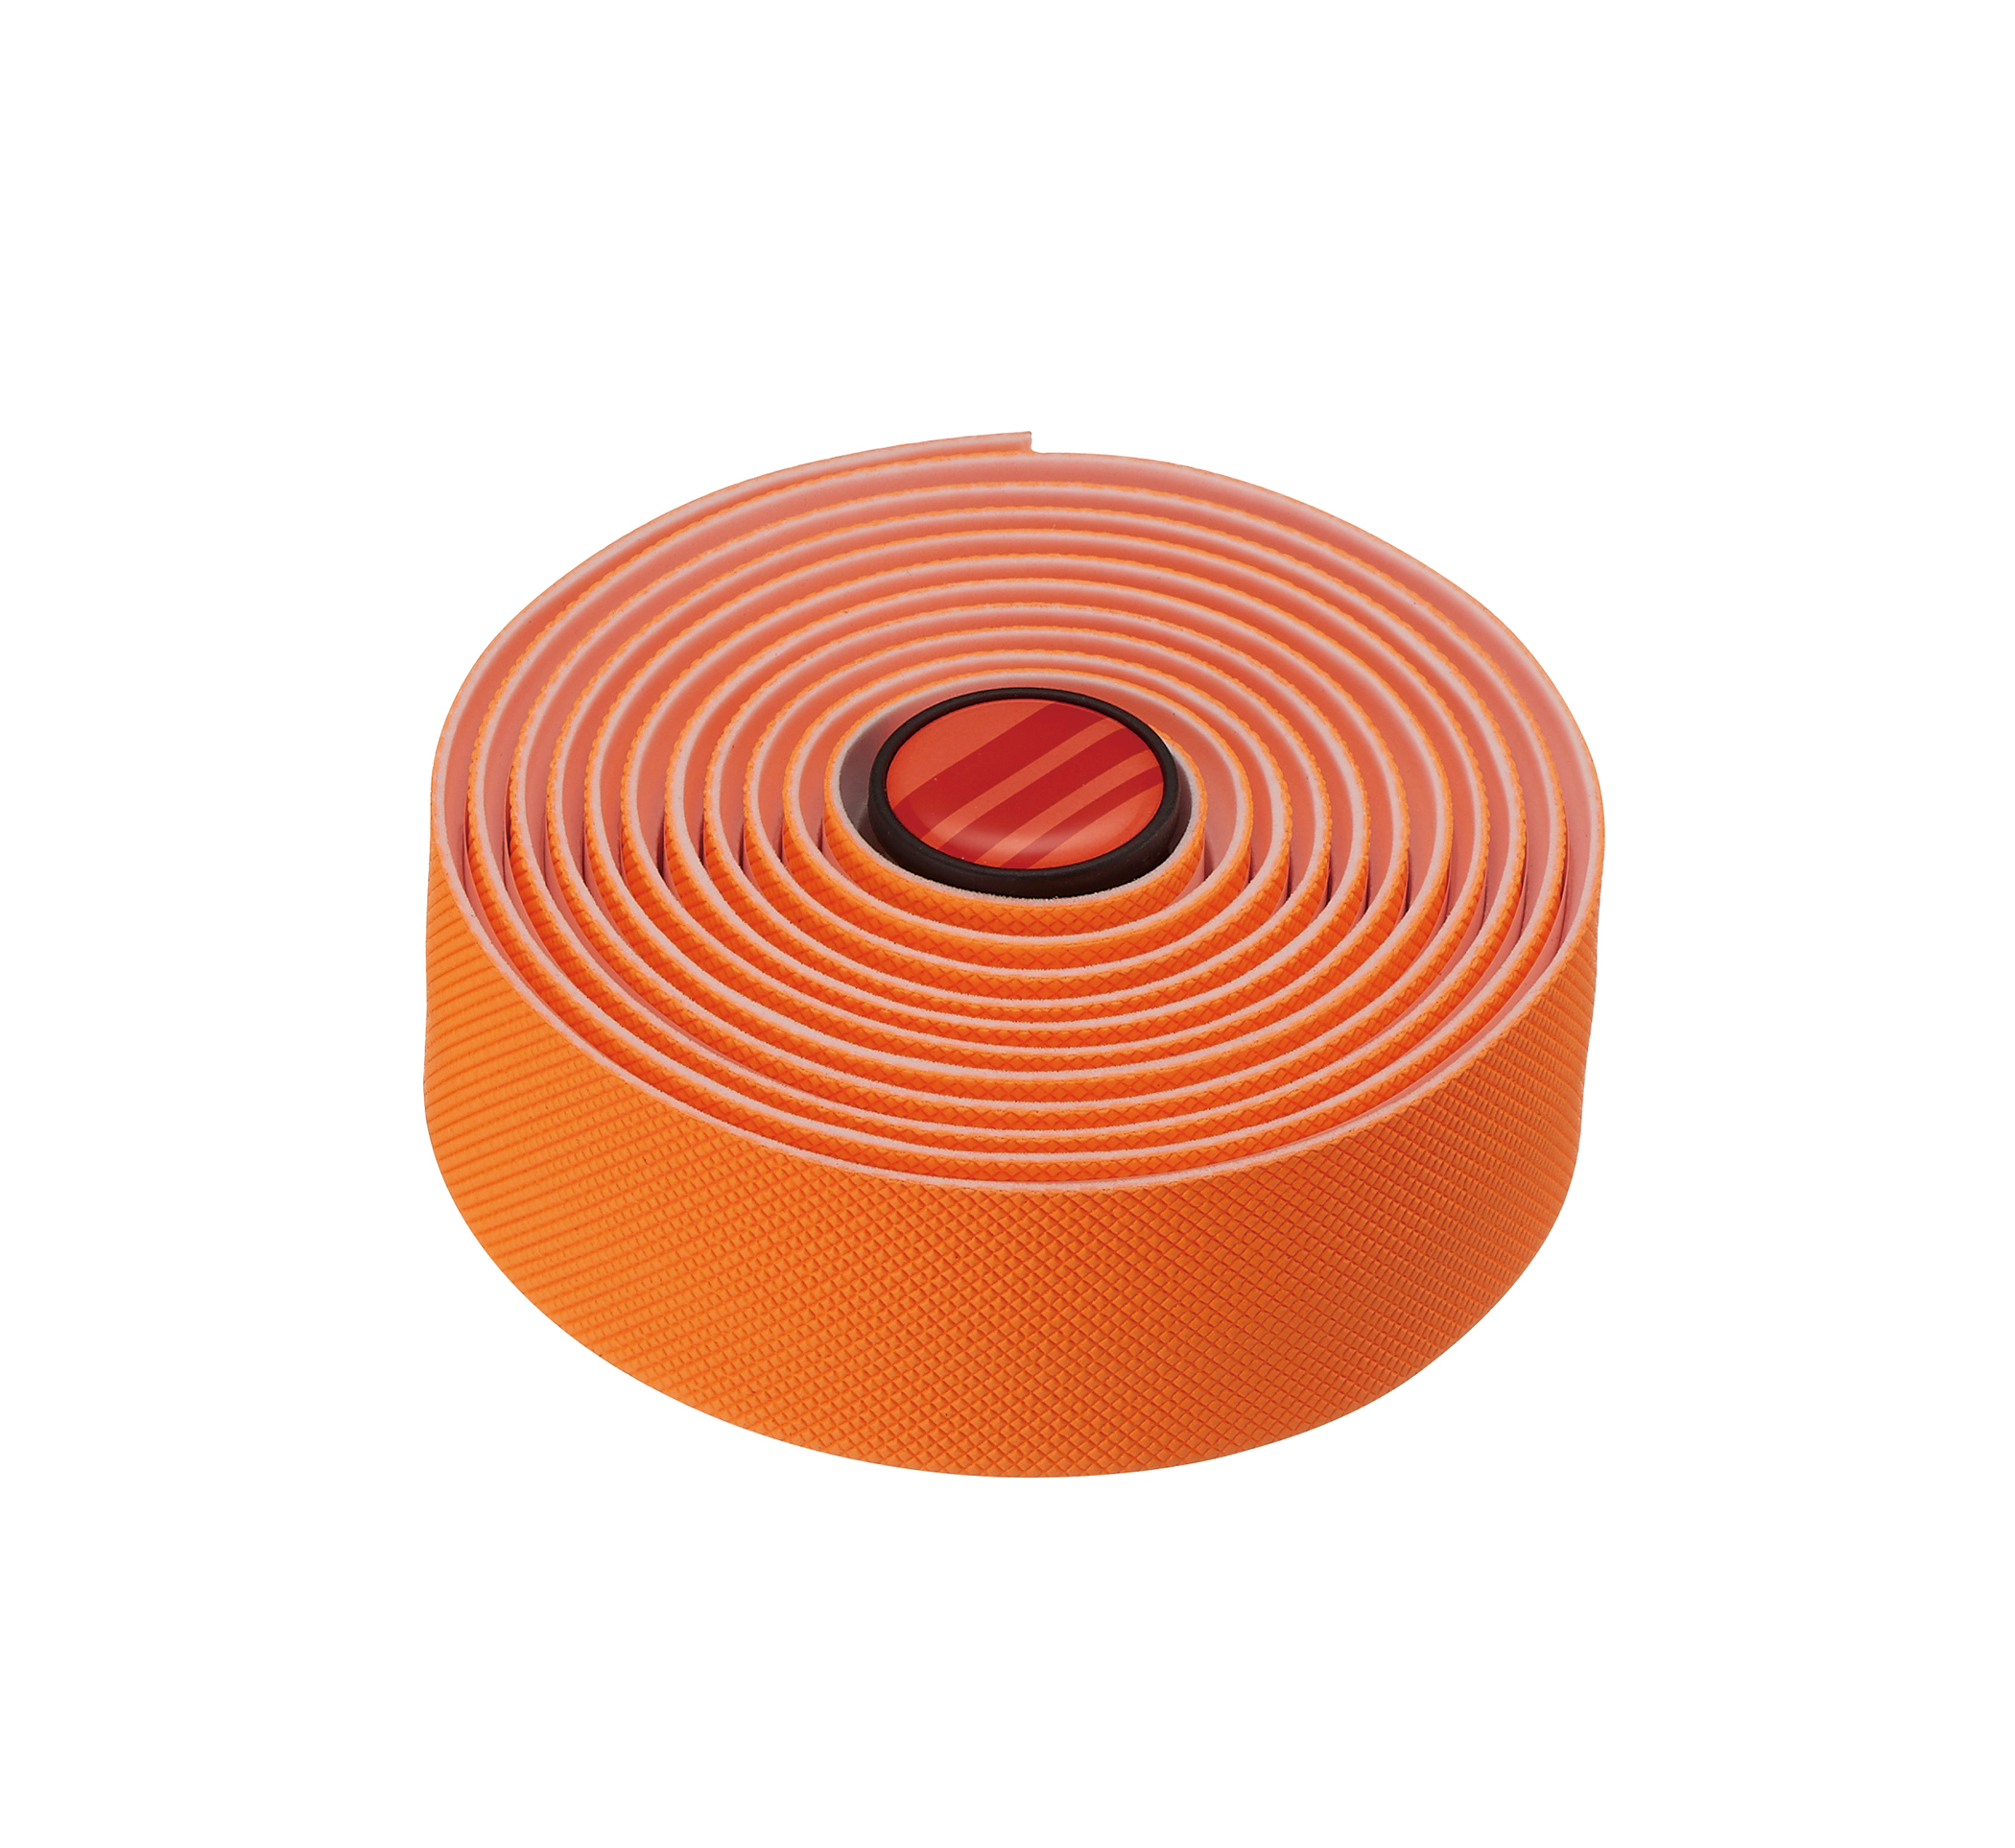 Обмотка руля FSA POWERTOUCH, вспененая резина, оранжевая фото 